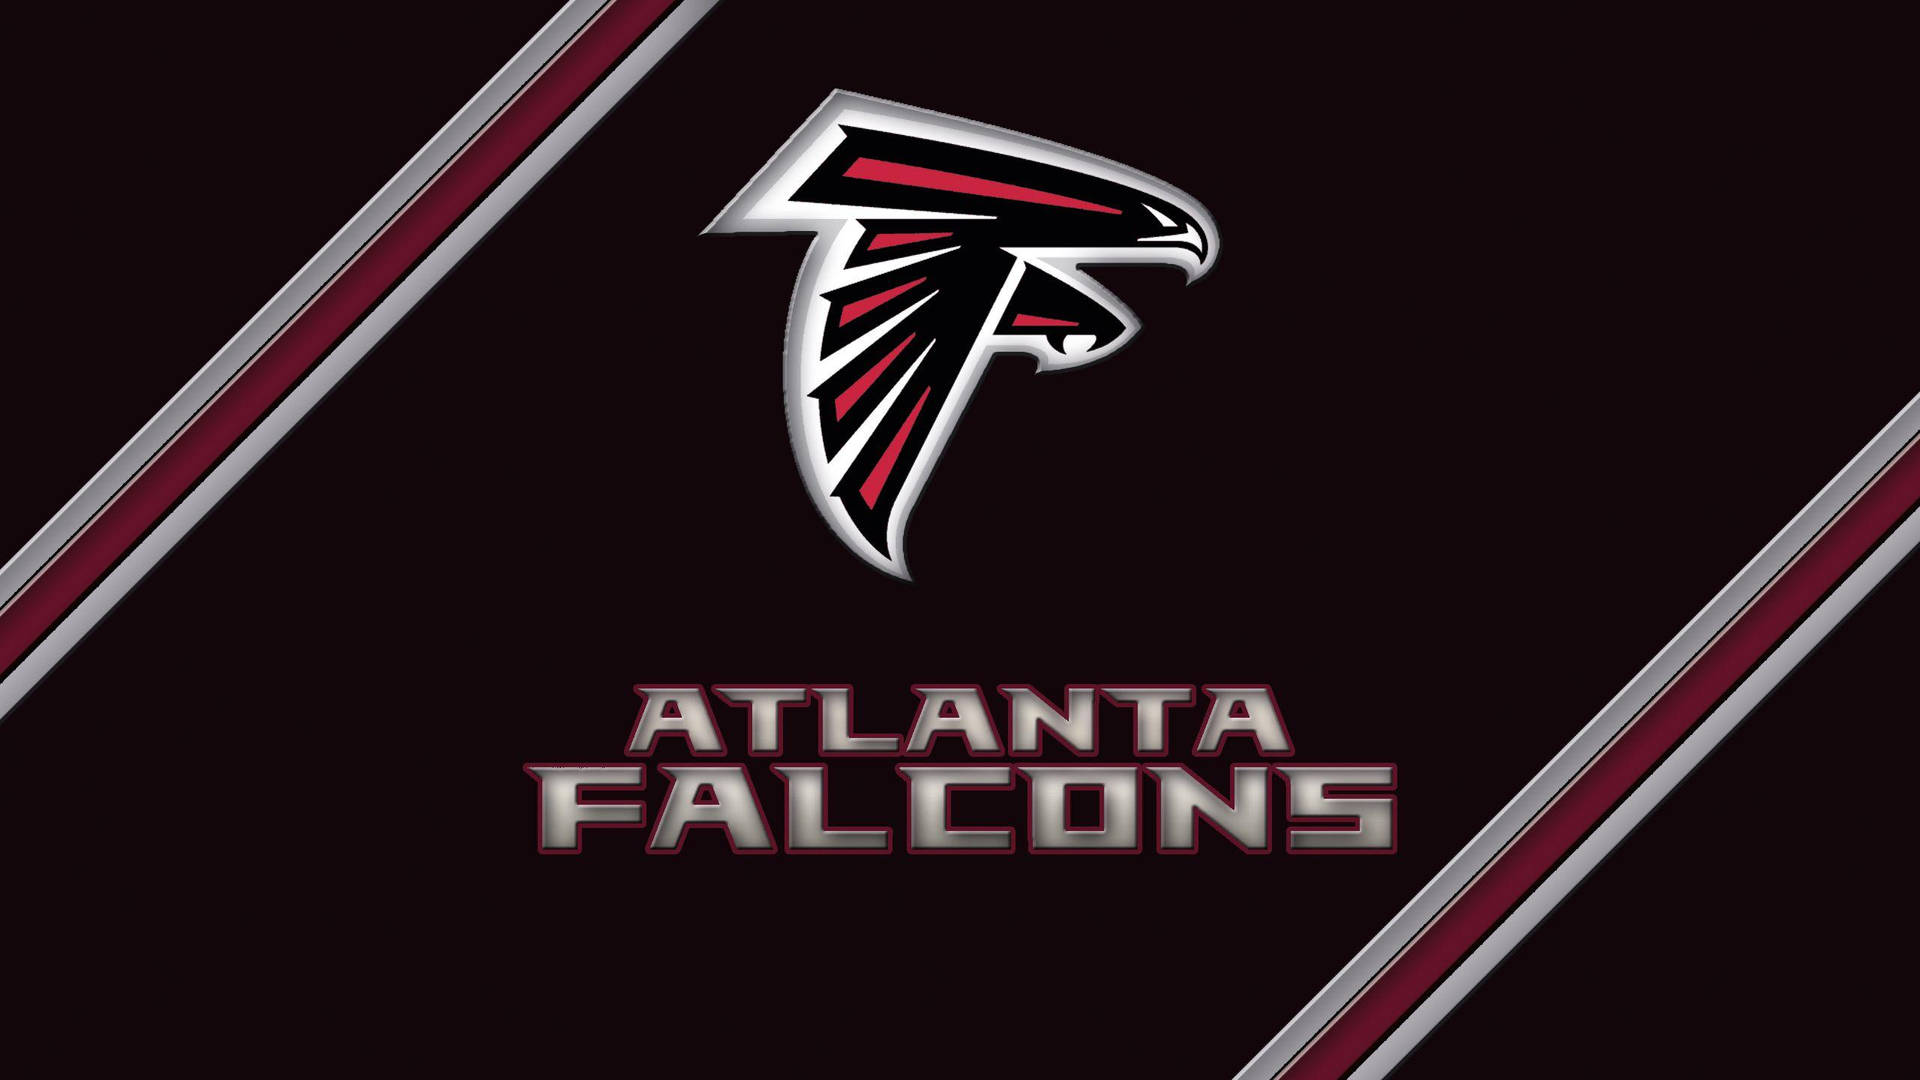 Atlanta Falcons 2560 X 1440 Wallpaper